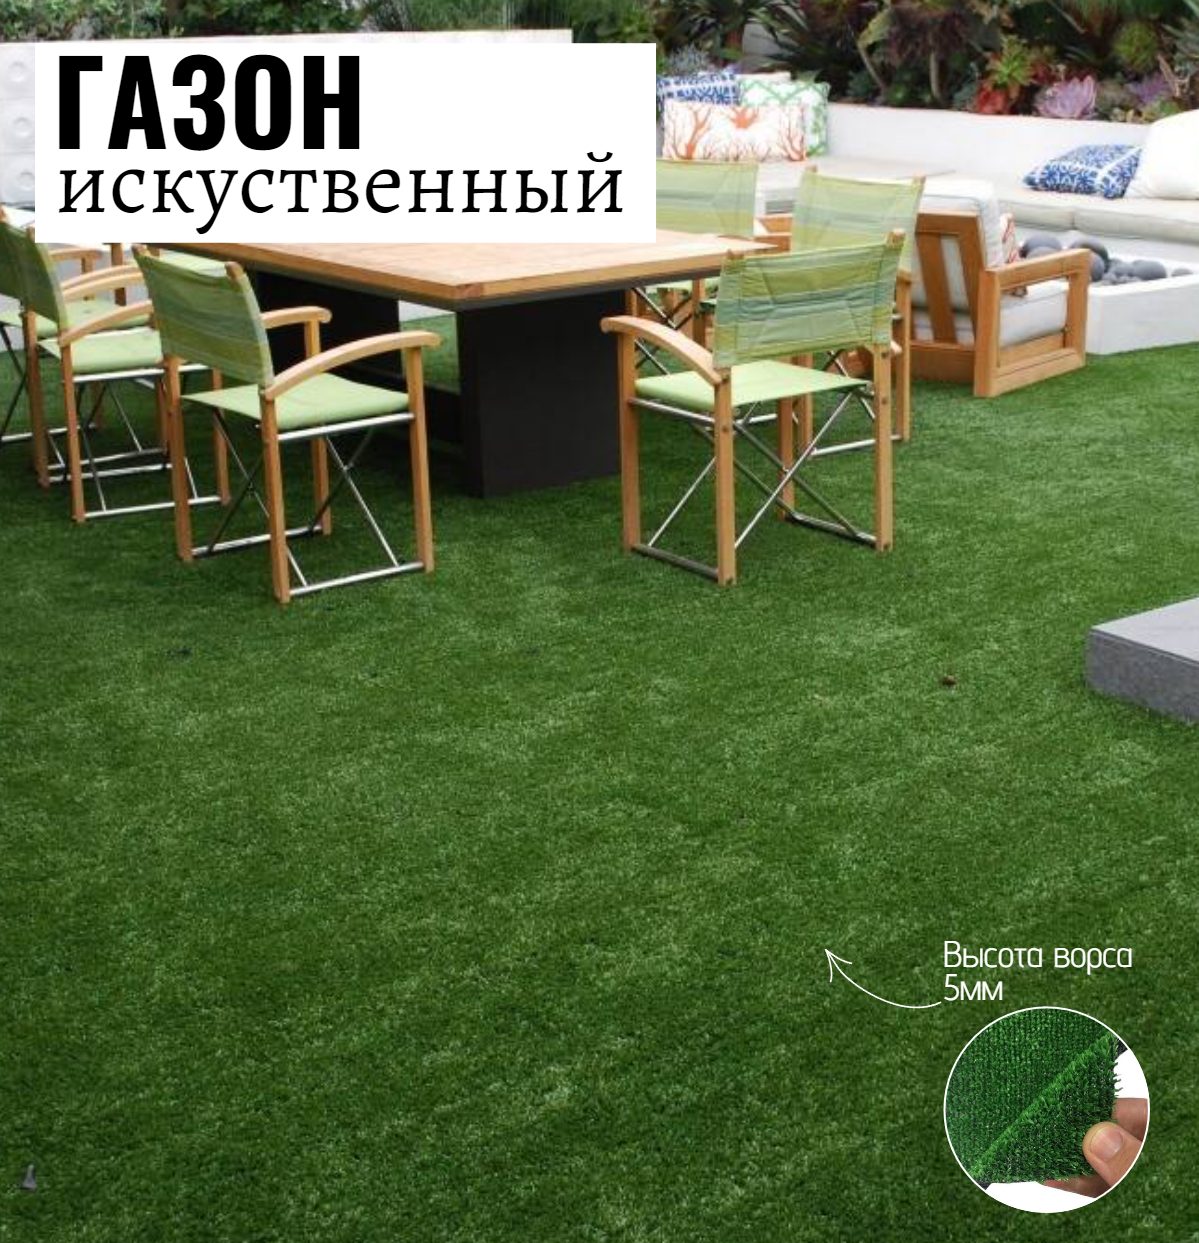 Искусственный газон Салон Ковров газон gzn-2-018 1 шт. 2х1.8м